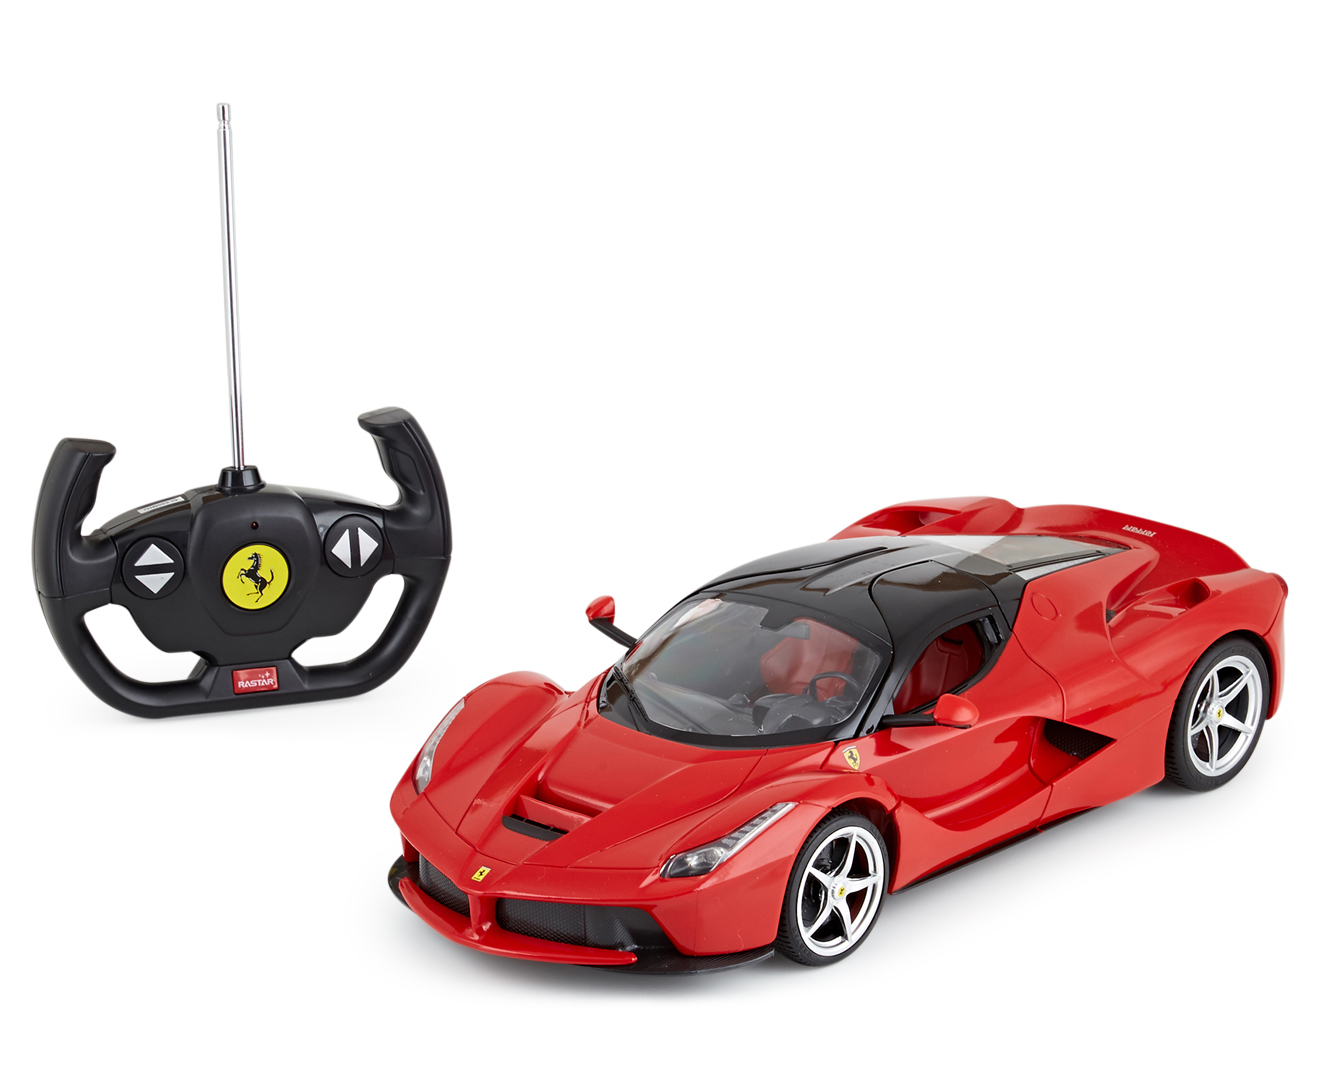 Rastar Ferrari LaFerrari RC Car - Red | Catch.co.nz